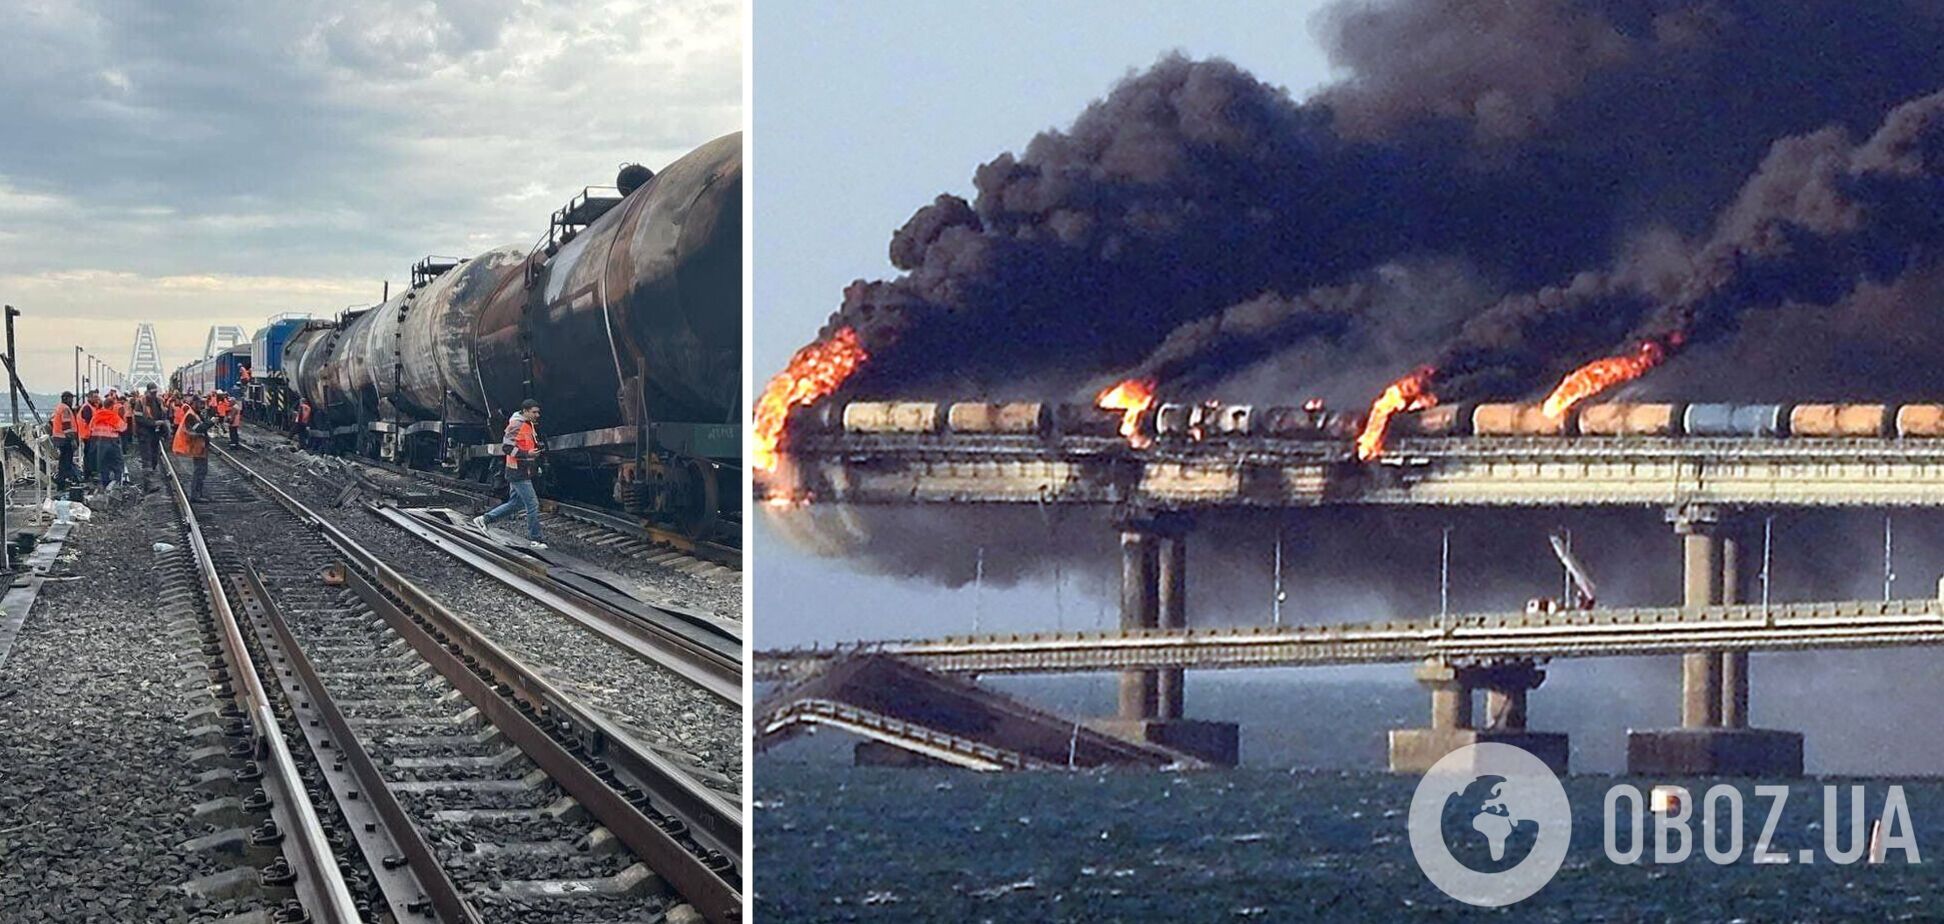 Безопасность моста в эпицентре пожара под большим вопросом: появилось новое видео с места взрыва на Крымском мосту